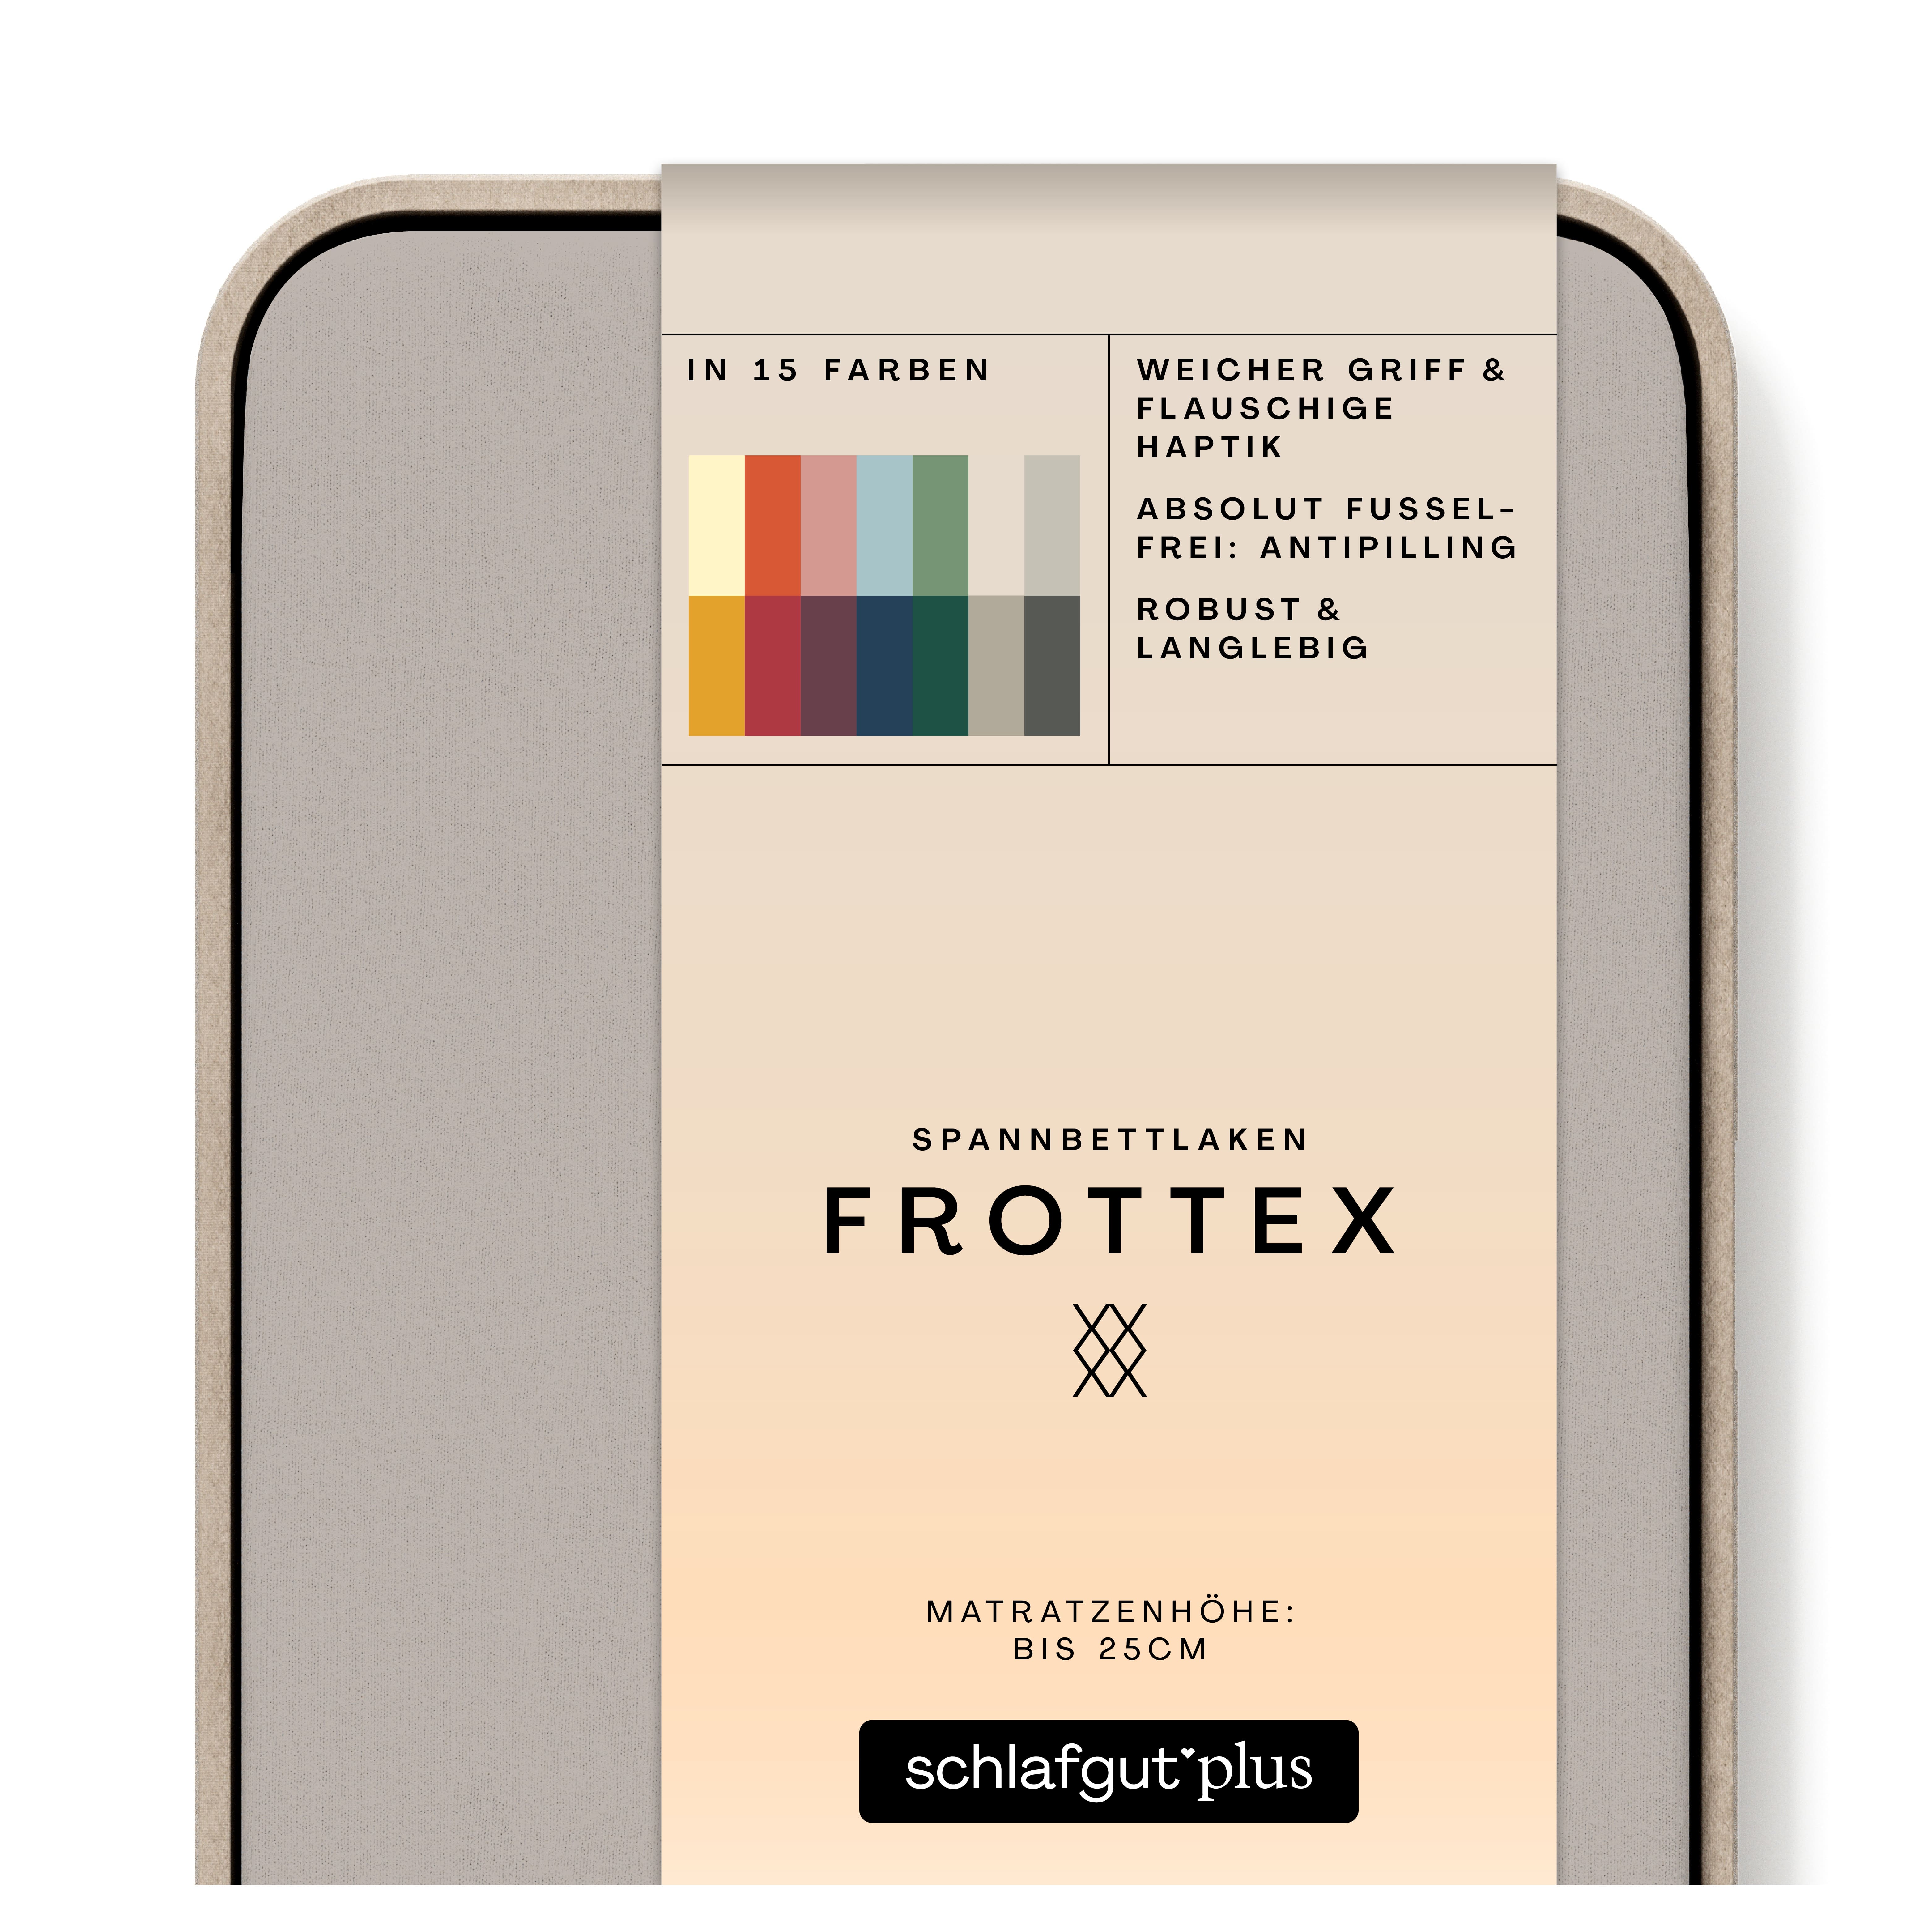 Das Produktbild vom Spannbettlaken der Reihe Frottex in Farbe sand mid von Schlafgut